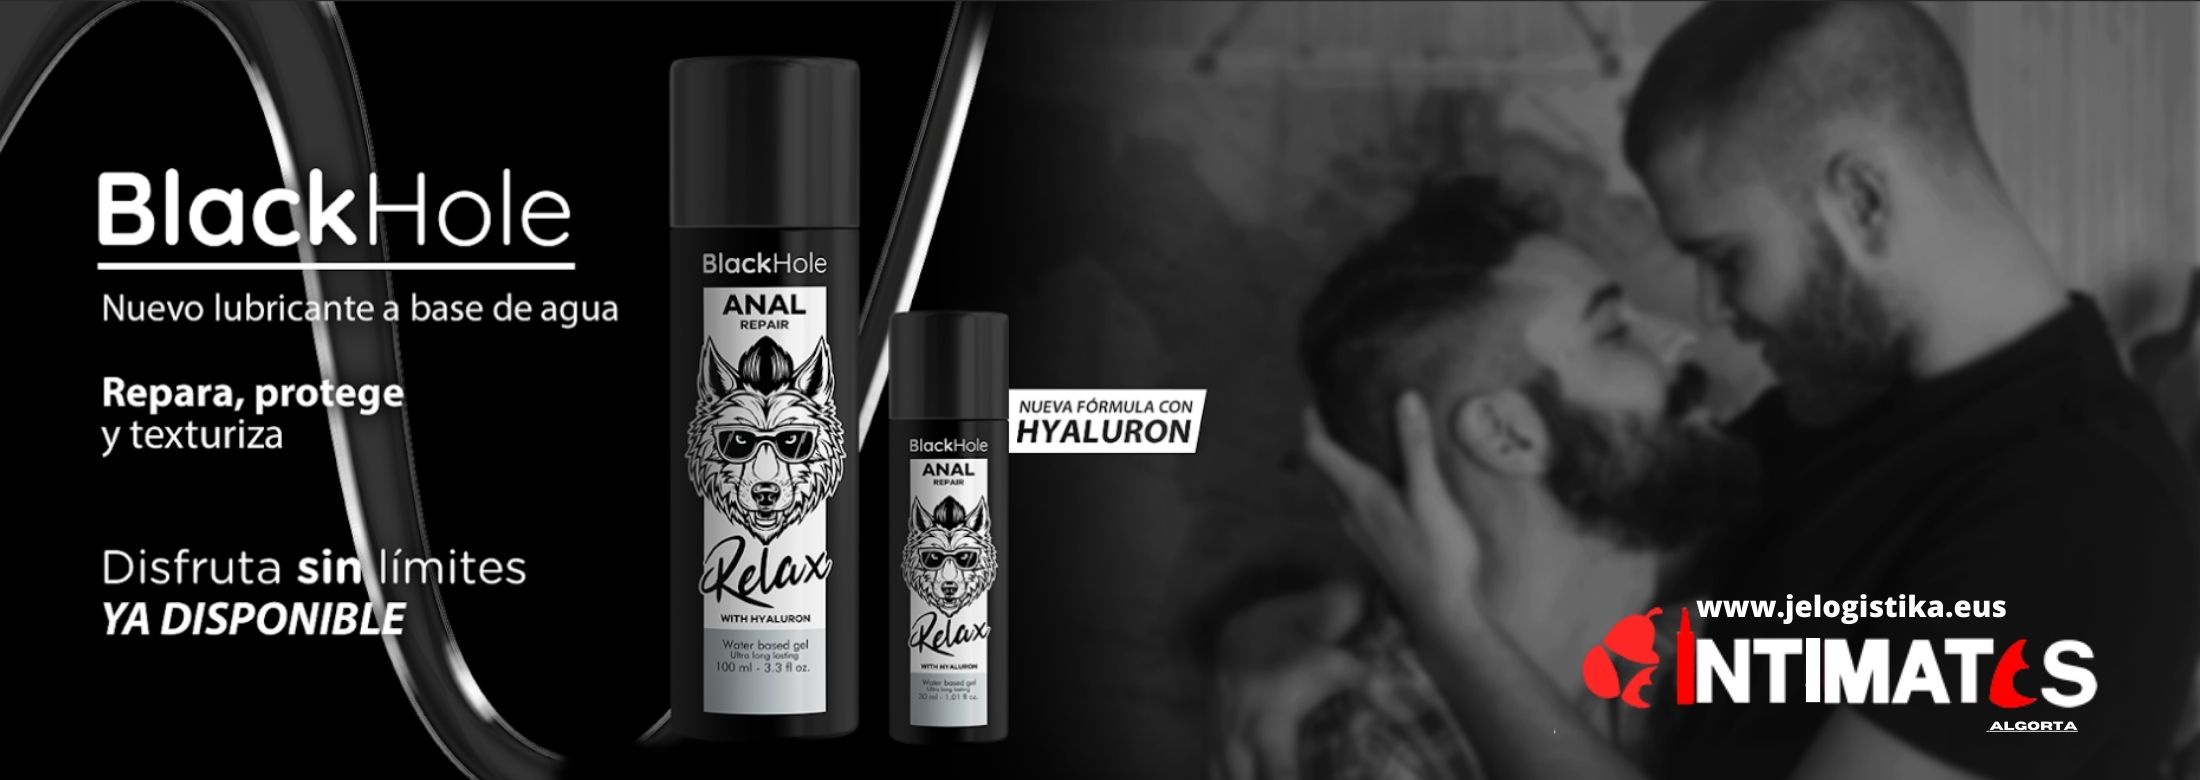 BlackHole ha estado desarrollando y produciendo uno de los lubricantes más vendidos del mundo , que puedes adquirir en intimates.es "Tu Sexshop Online"